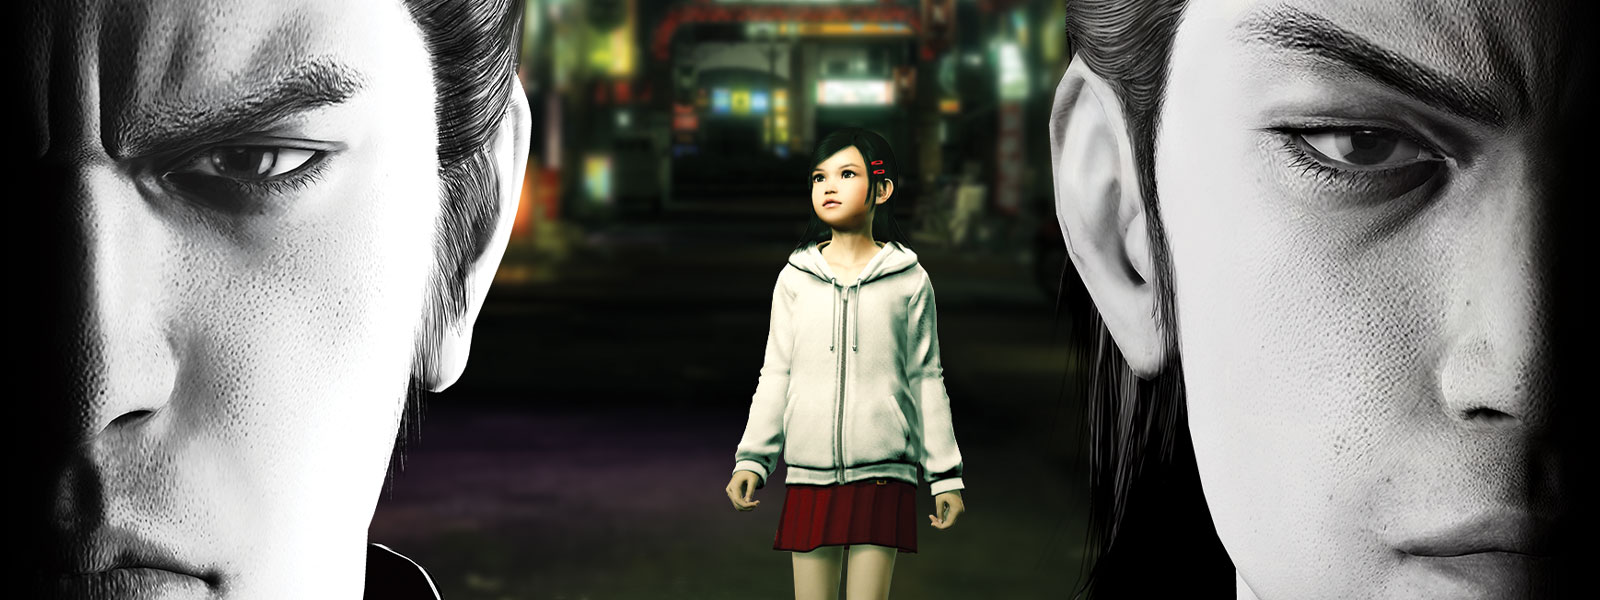 Dwie postacie z serii Yakuza patrzą przed siebie ponurym wzrokiem, podczas gdy mała dziewczynka stoi w mieście za nimi.